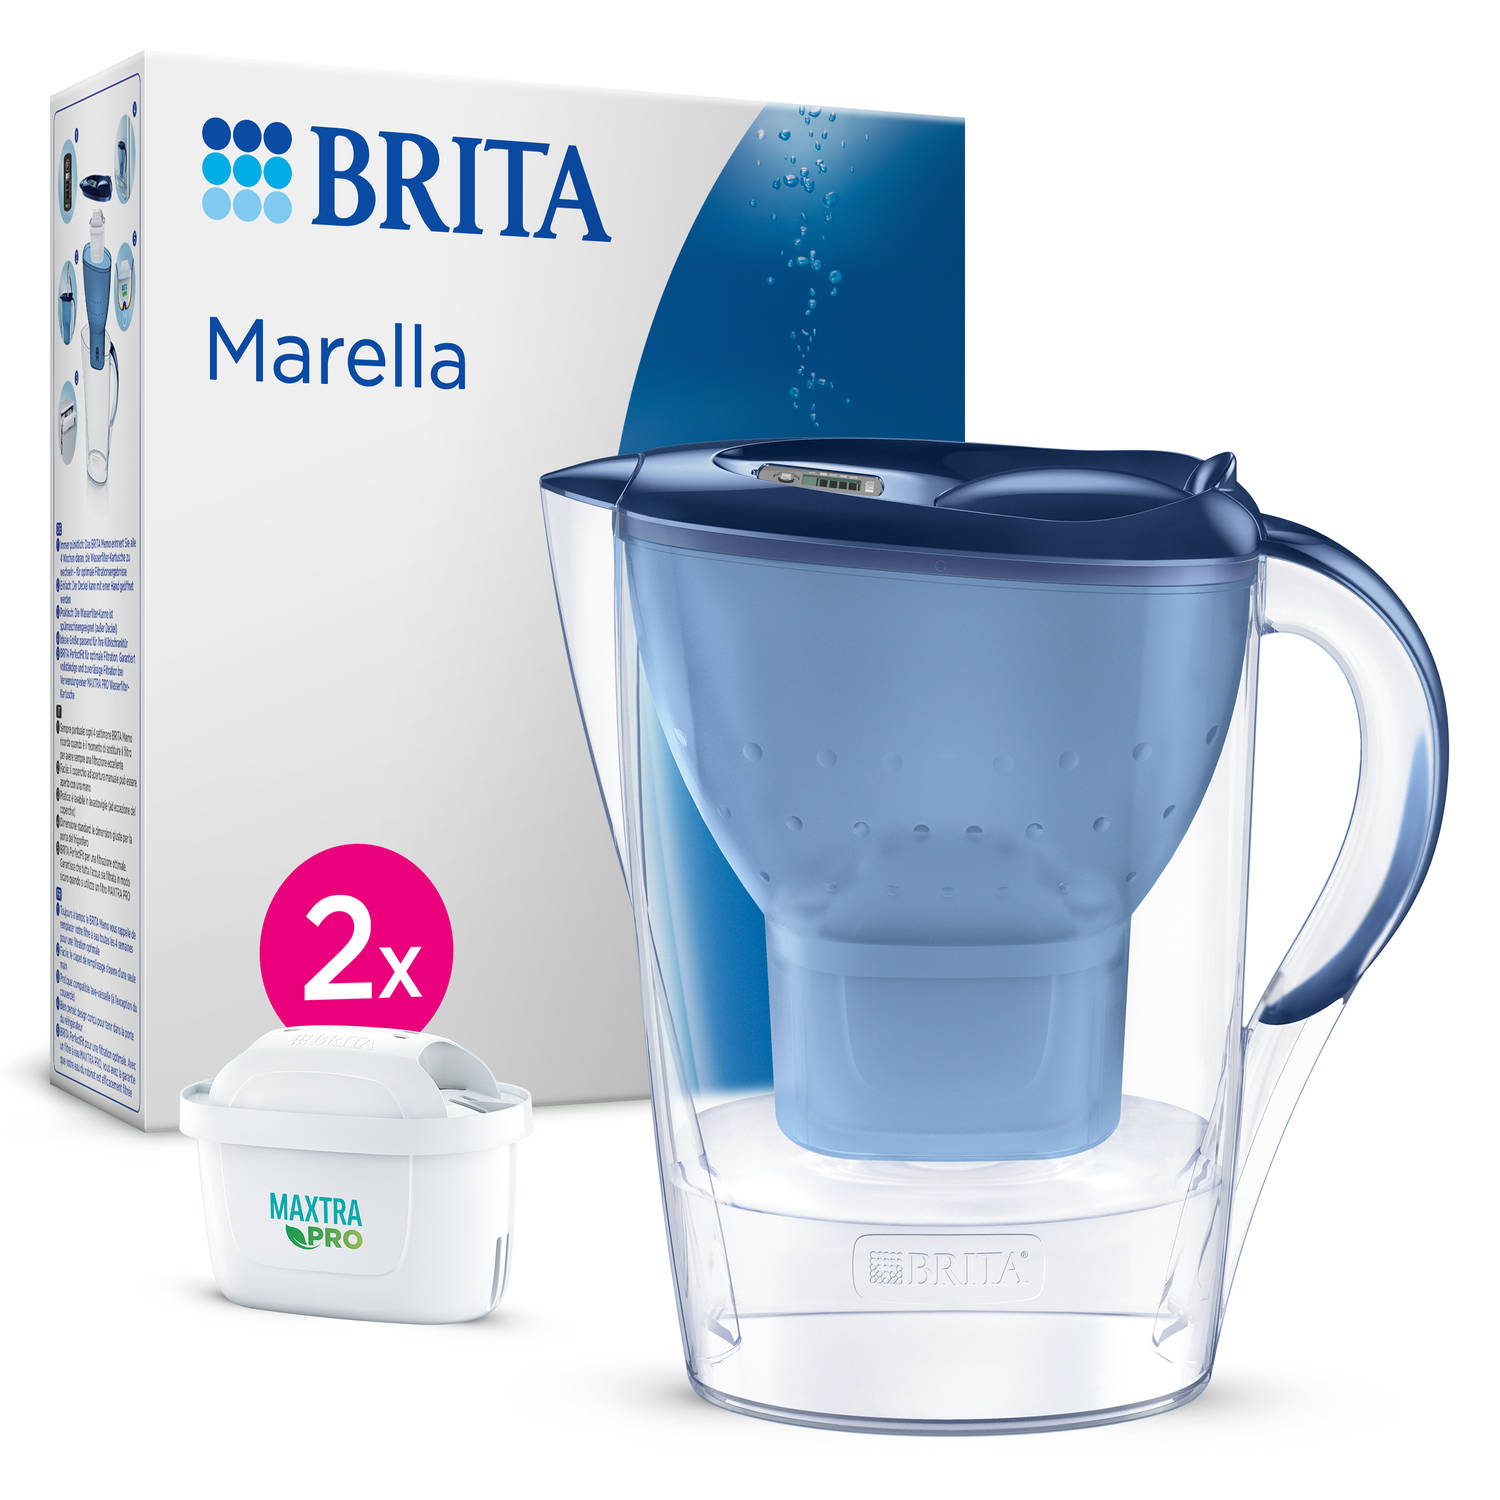 BRITA - Waterfilterkan - Marella Cool - Blauw - 2,4L + 2 MAXTRA Pro All-in-One Waterfilterpatronen - Voordeelverpakking